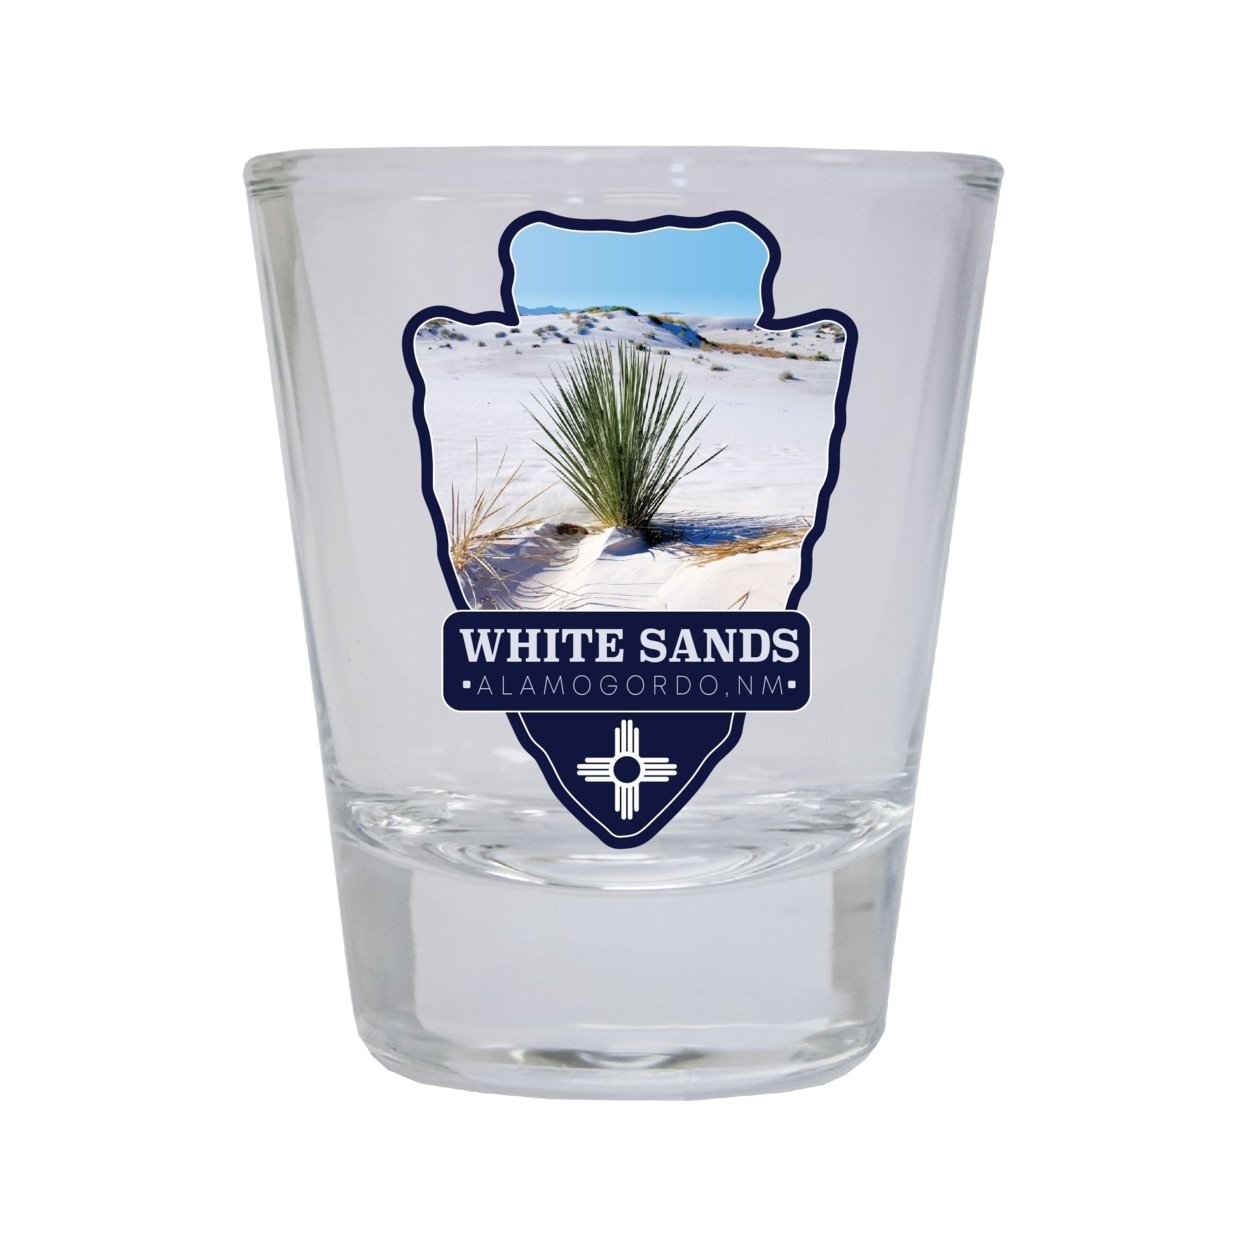 White Sands Alamogordo New Mexico Souvenir Round Shot Glass Choice Of Design - Design 4